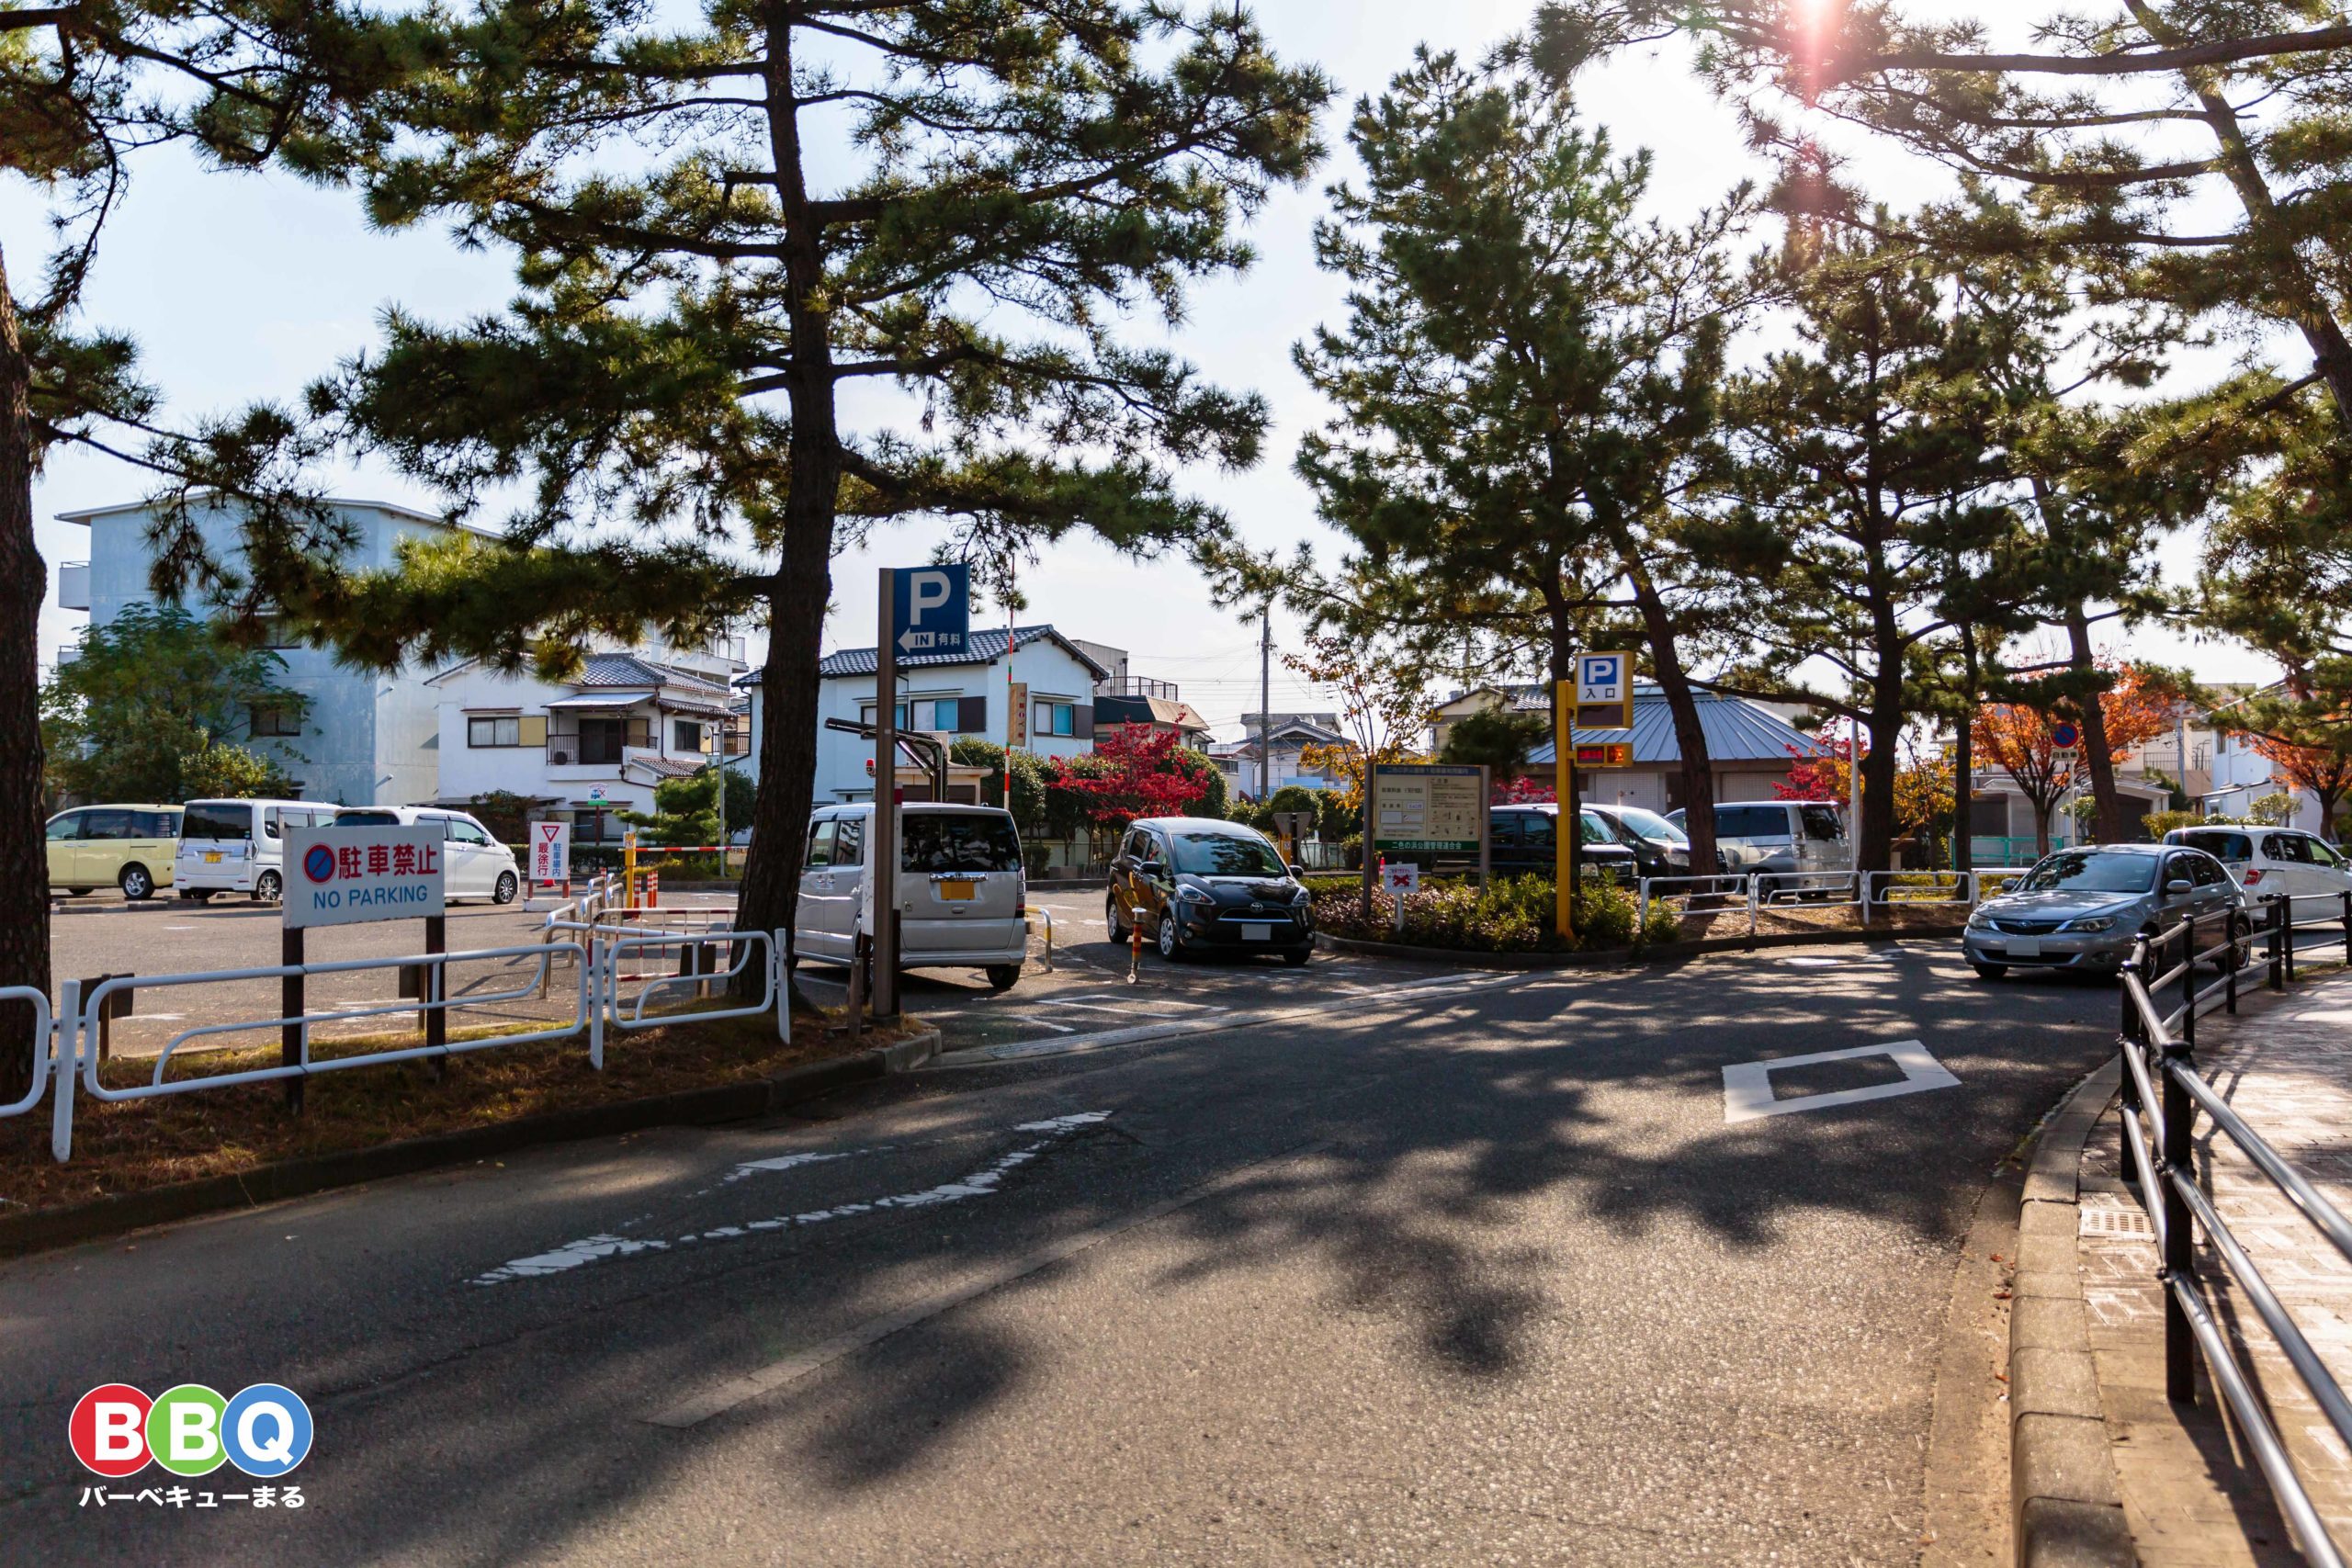 二色の浜公園沢地区最寄りの第一駐車場出入り口